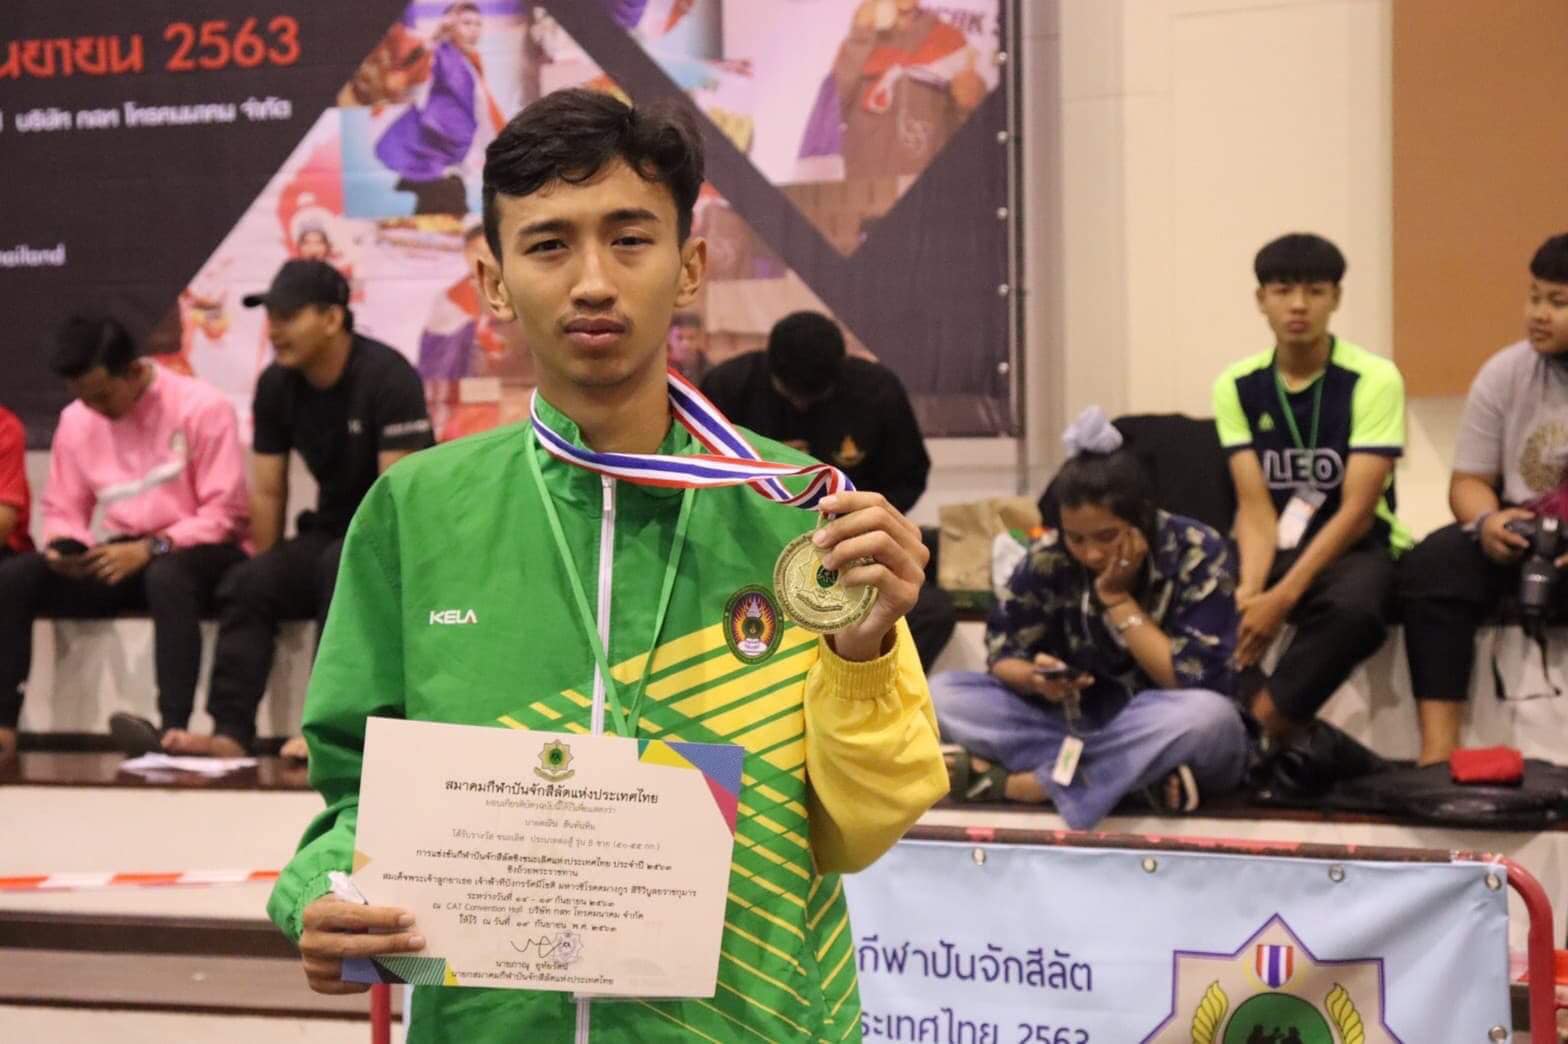 การแข่งขันกีฬาปันจักสีลัตชิงชนะเลิศแห่งประเทศไทยประจำปี 2563 ได้ 1 เหรียญทอง 1 เหรียญเงิน 4 เหรียญทองแดง